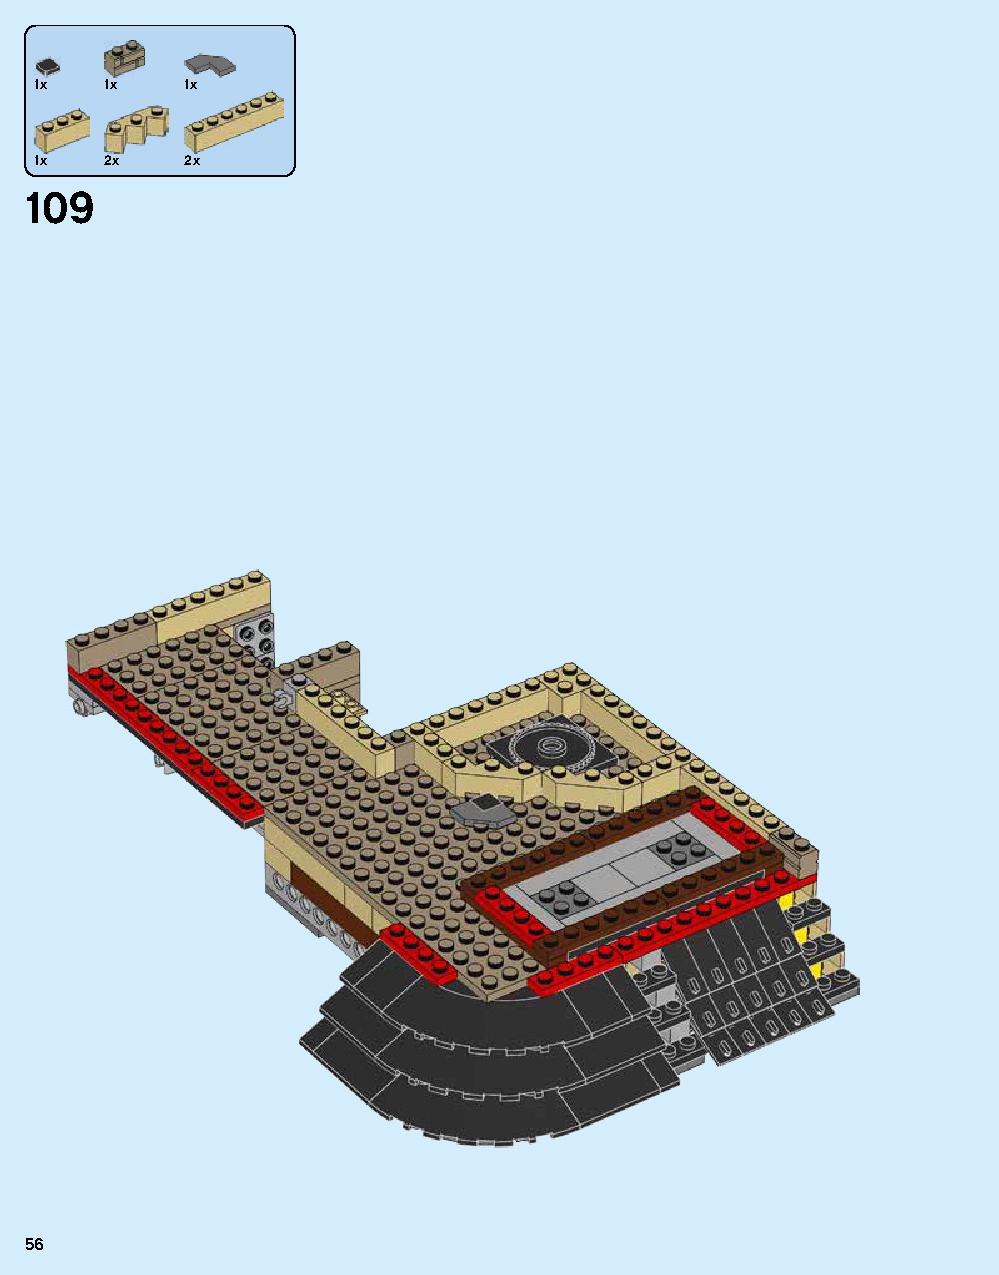 ニンジャゴー シティ 70620 レゴの商品情報 レゴの説明書・組立方法 56 page